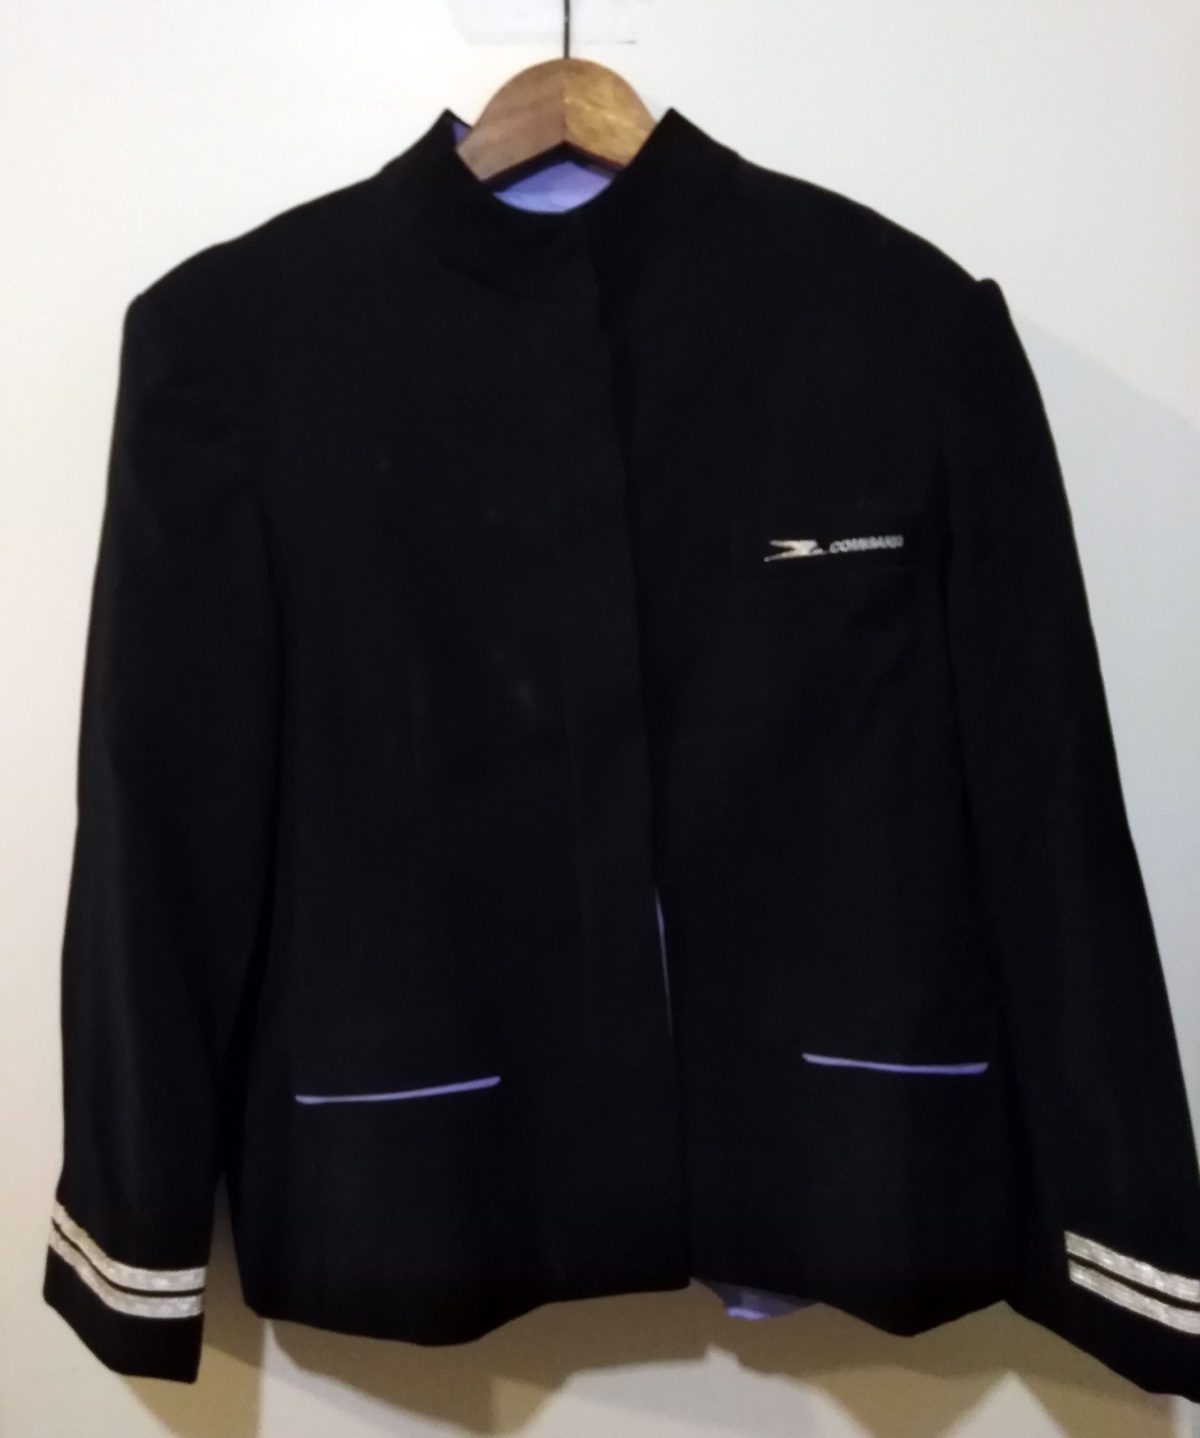 Vintage Obsolete Aerolineas Argentinas Airlines Flight Stewardess Uniform